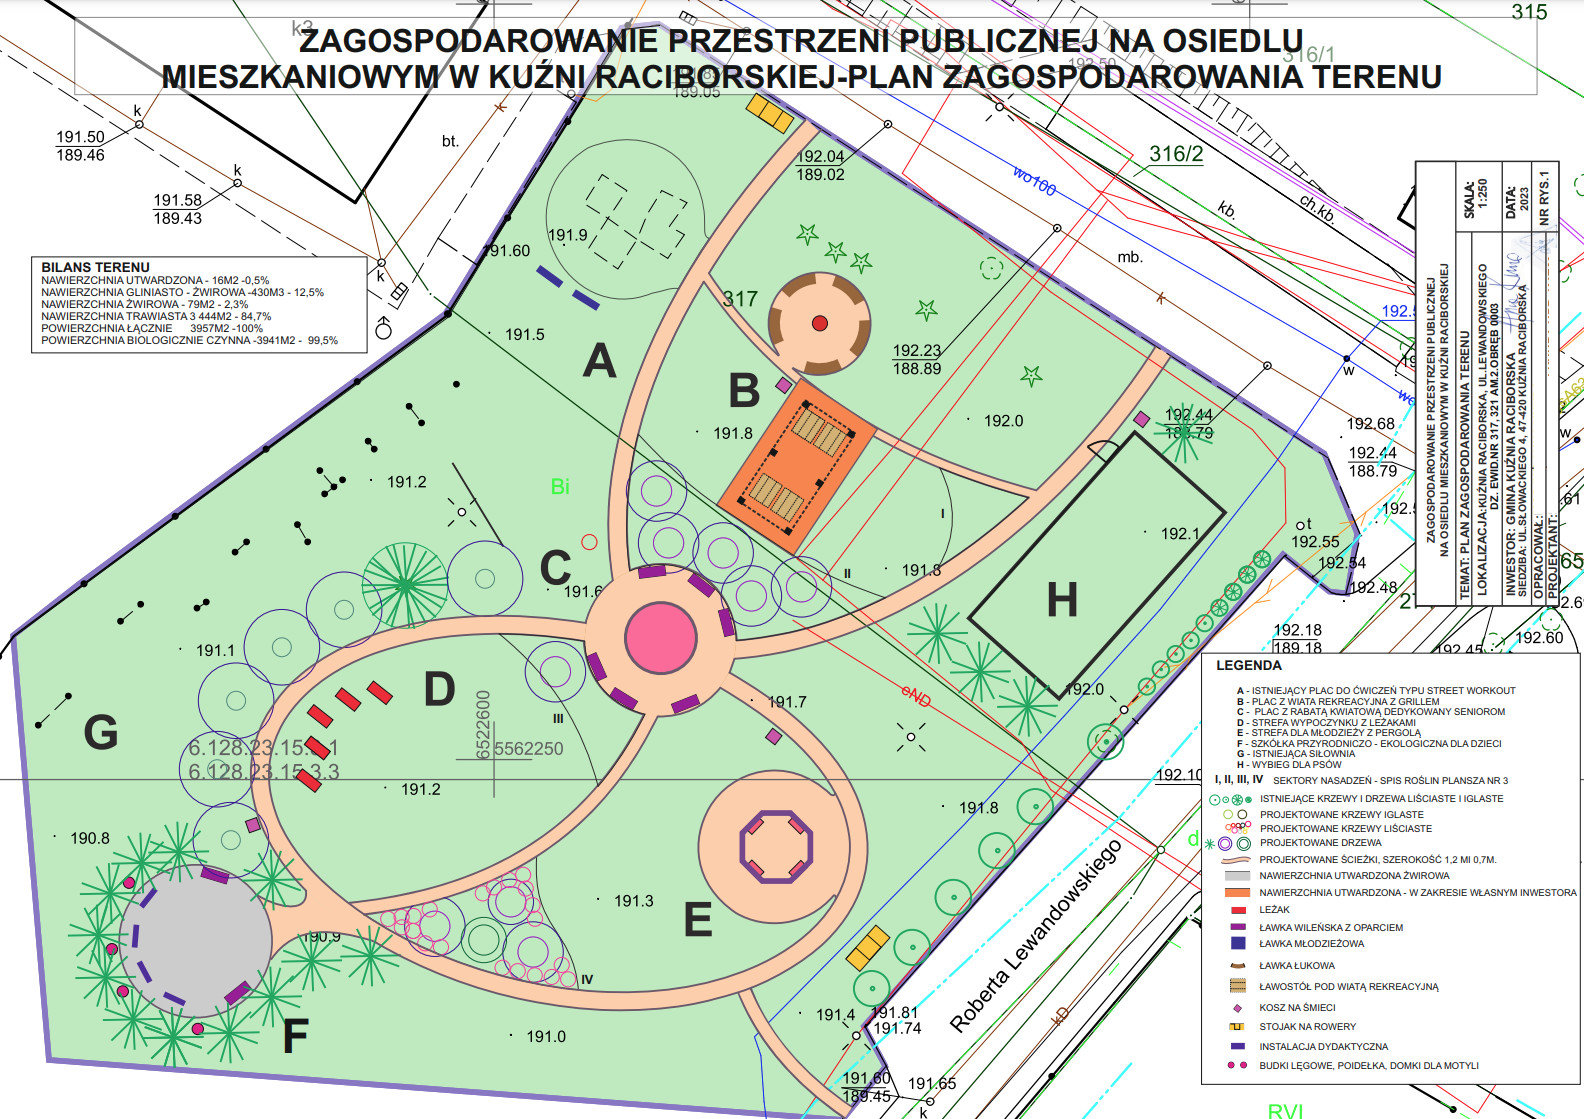 Podpisano umowę na budowę Ekoparku w Kuźni Raciborskiej